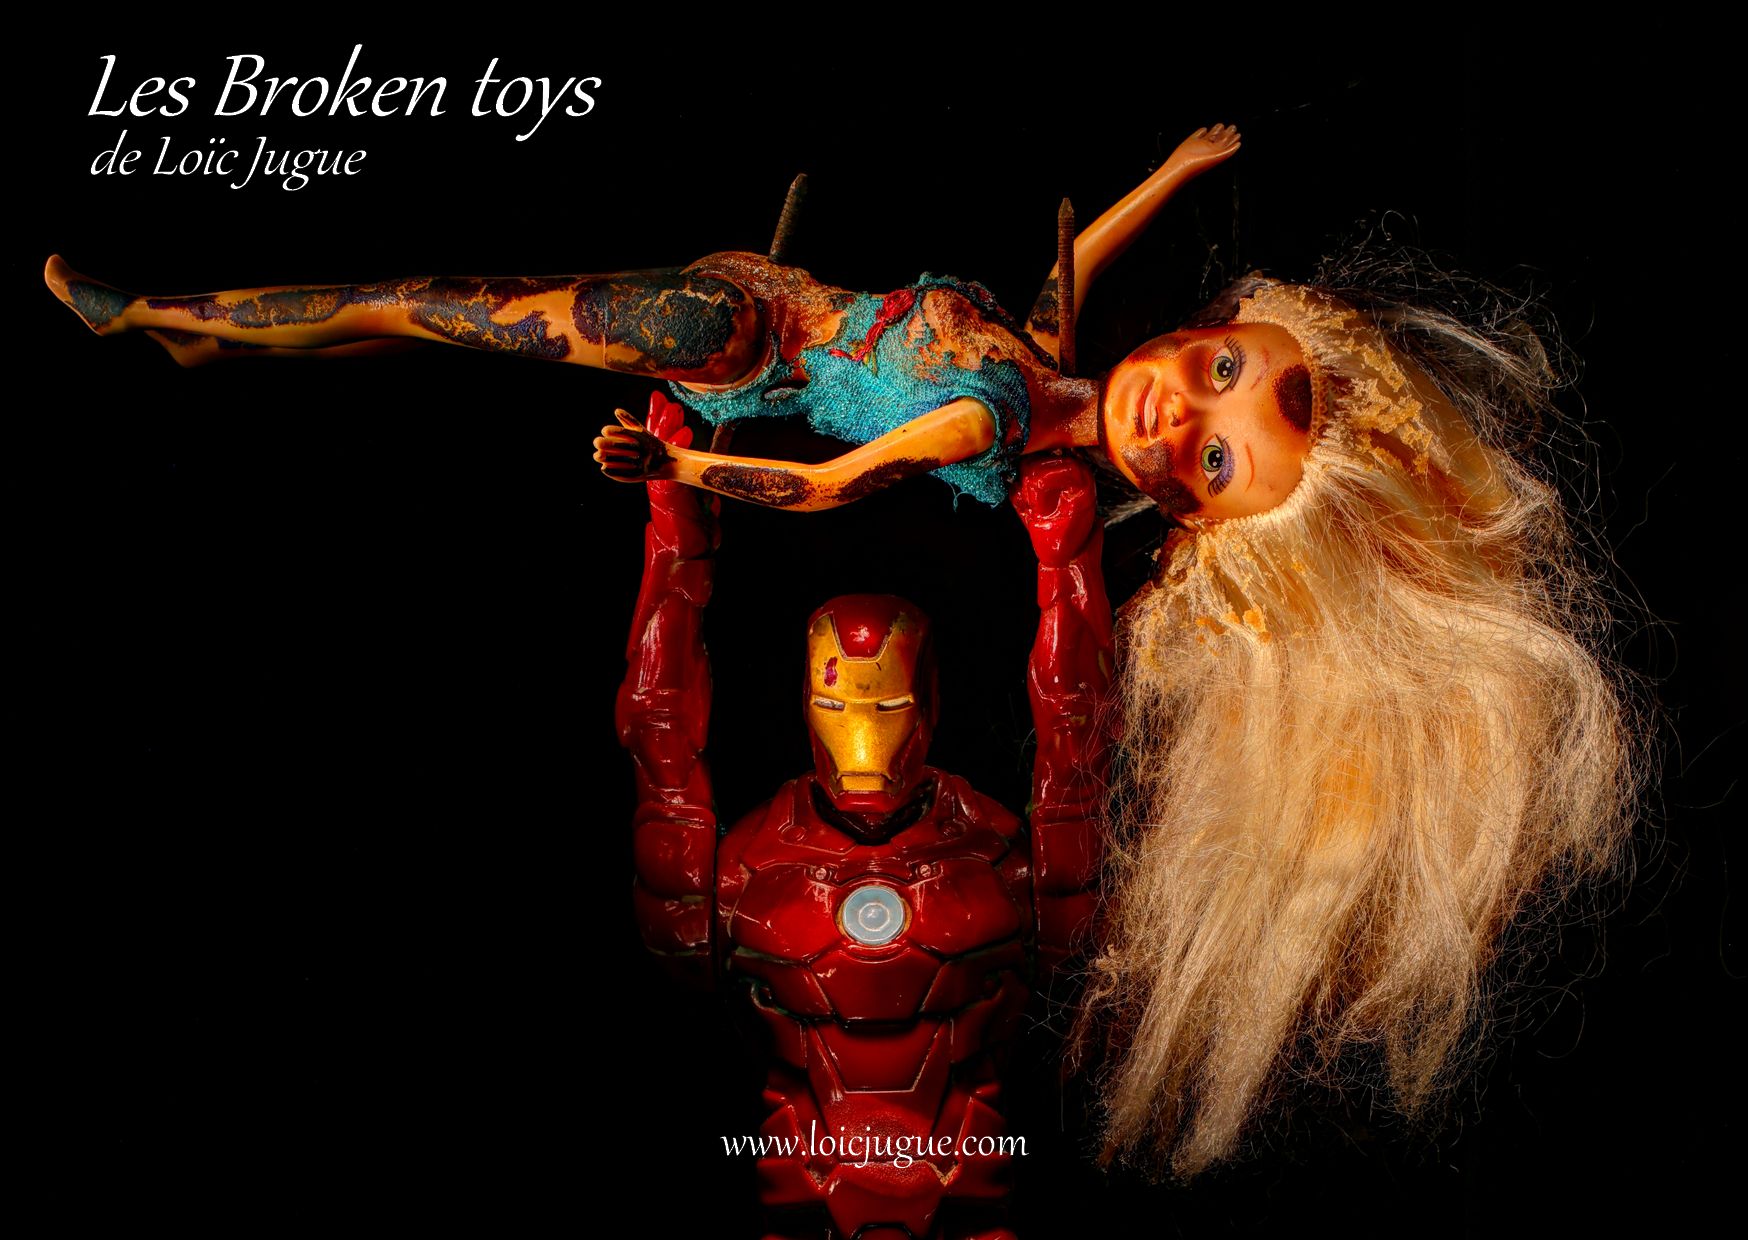 Les broken toys de Loïc Jugue: Iron man and the doll